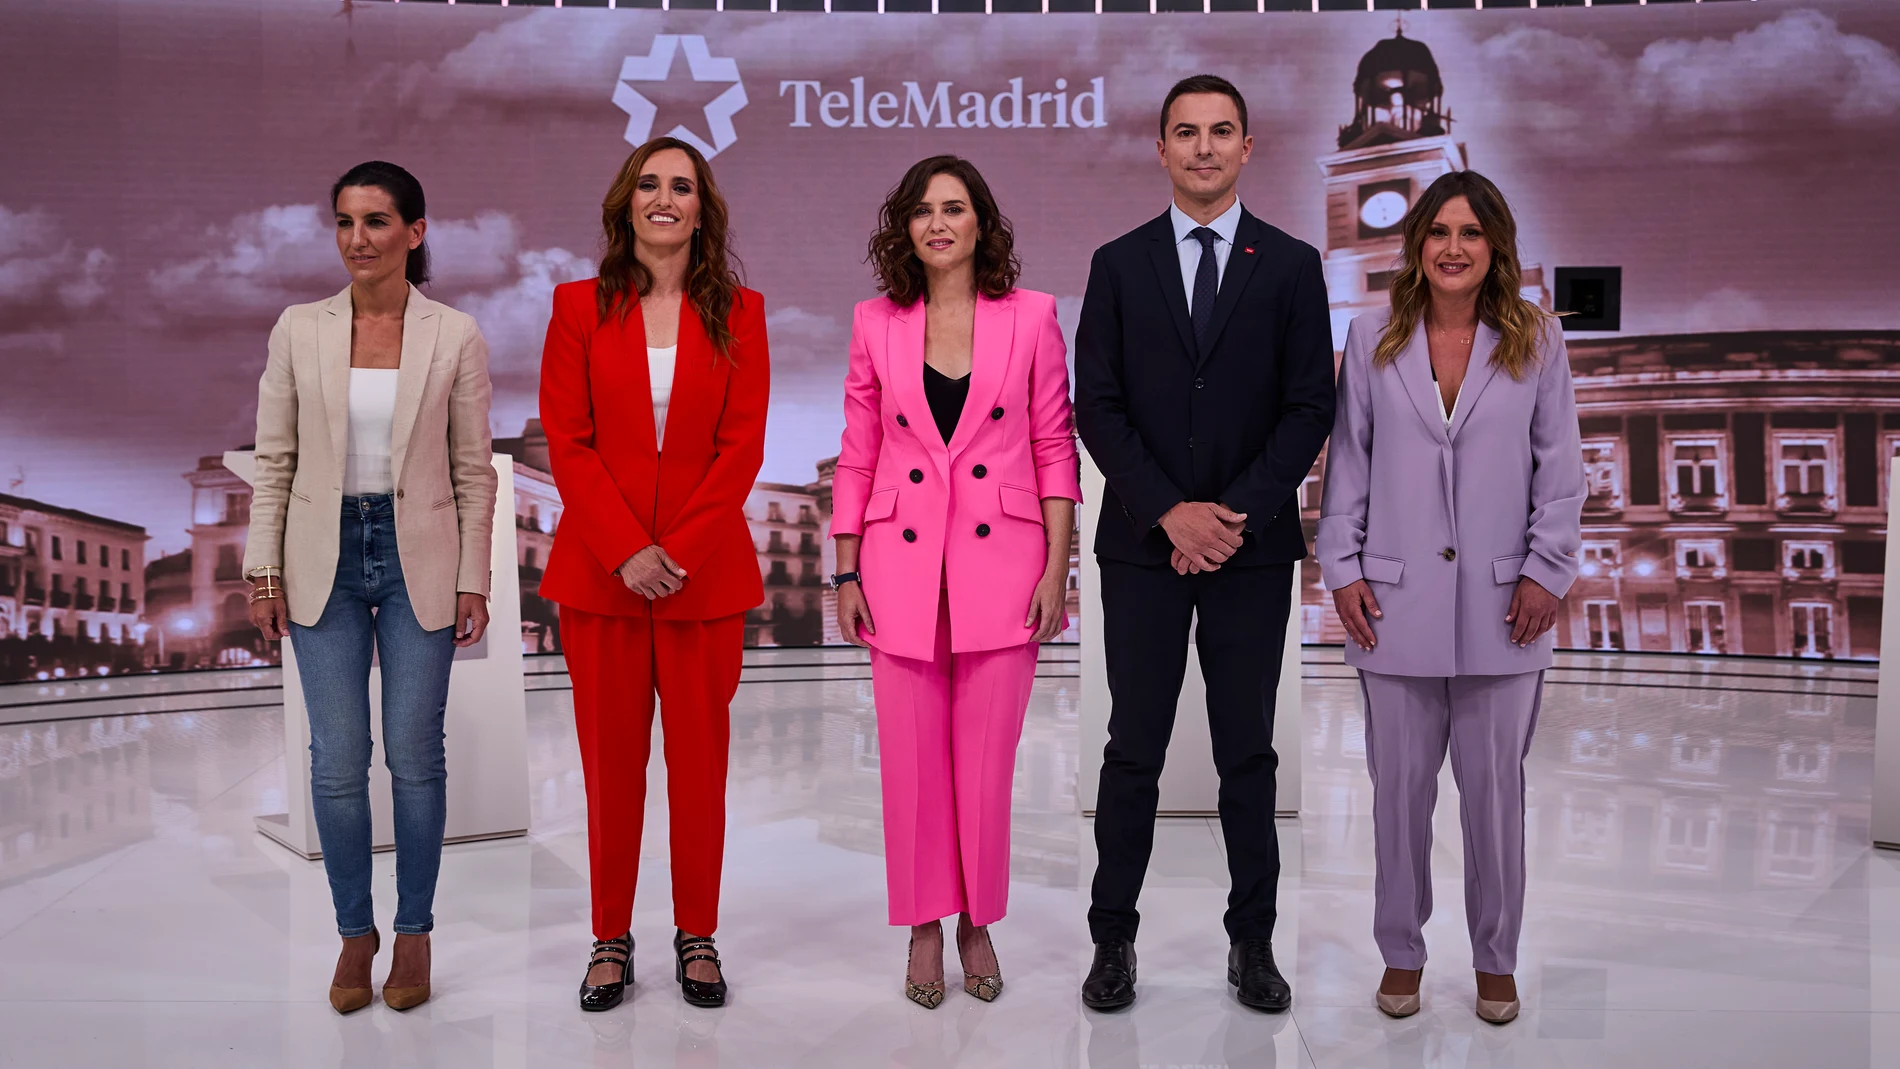 Debate de cinco de los candidatos a la presidencia de la Comunidad madrileña en la sede de Telemadrid.